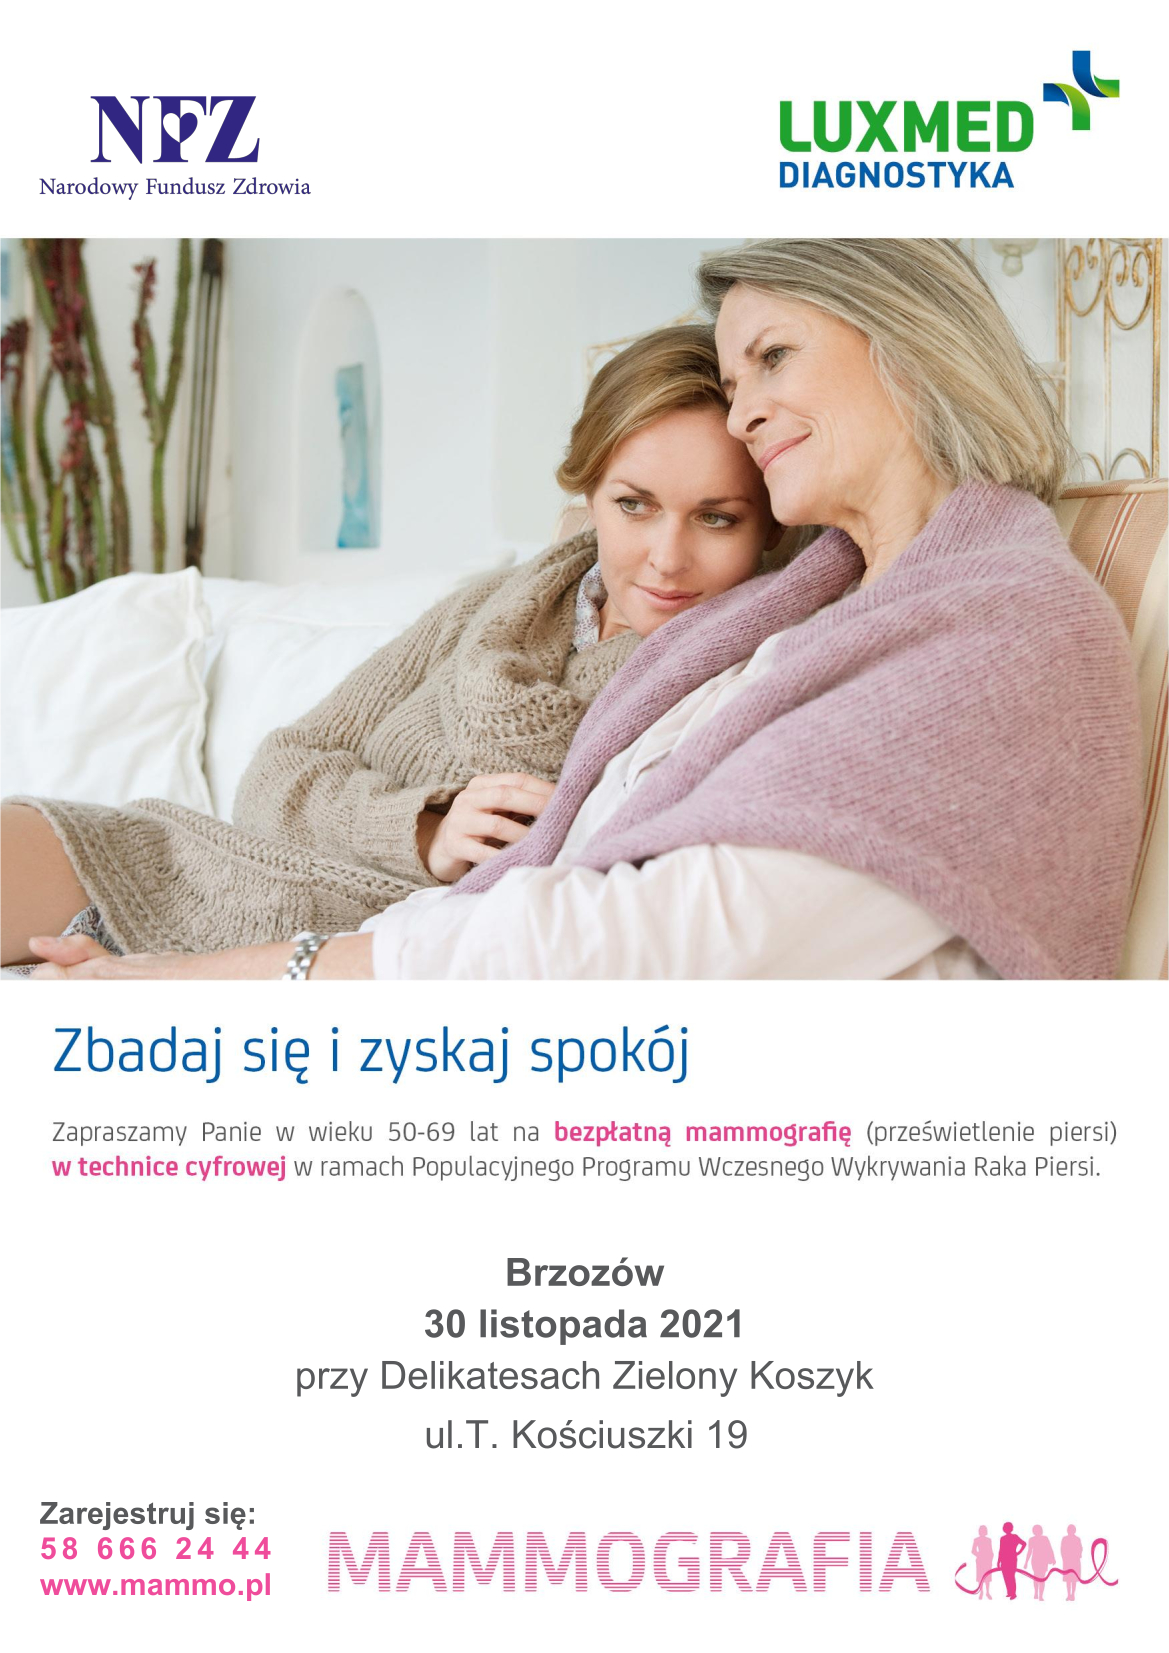 Plakat NFZ "Zbadaj się i zyskaj spokój" - Mammografia